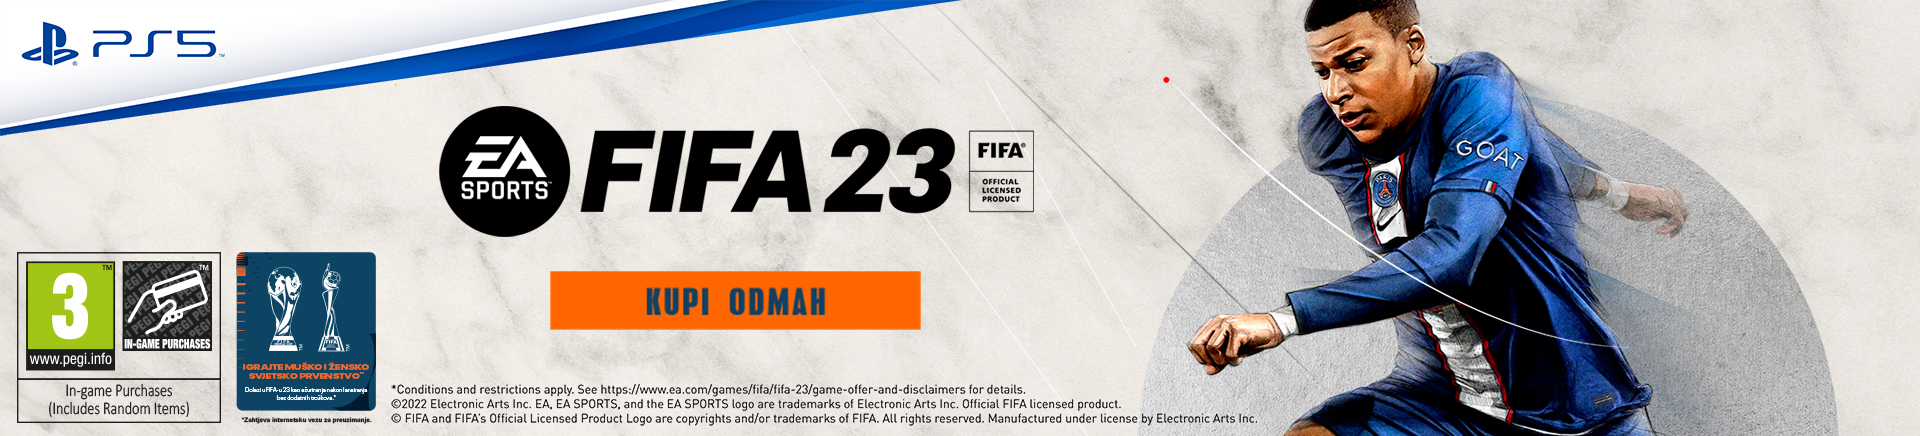 FIFA 23 - Kupi odmah